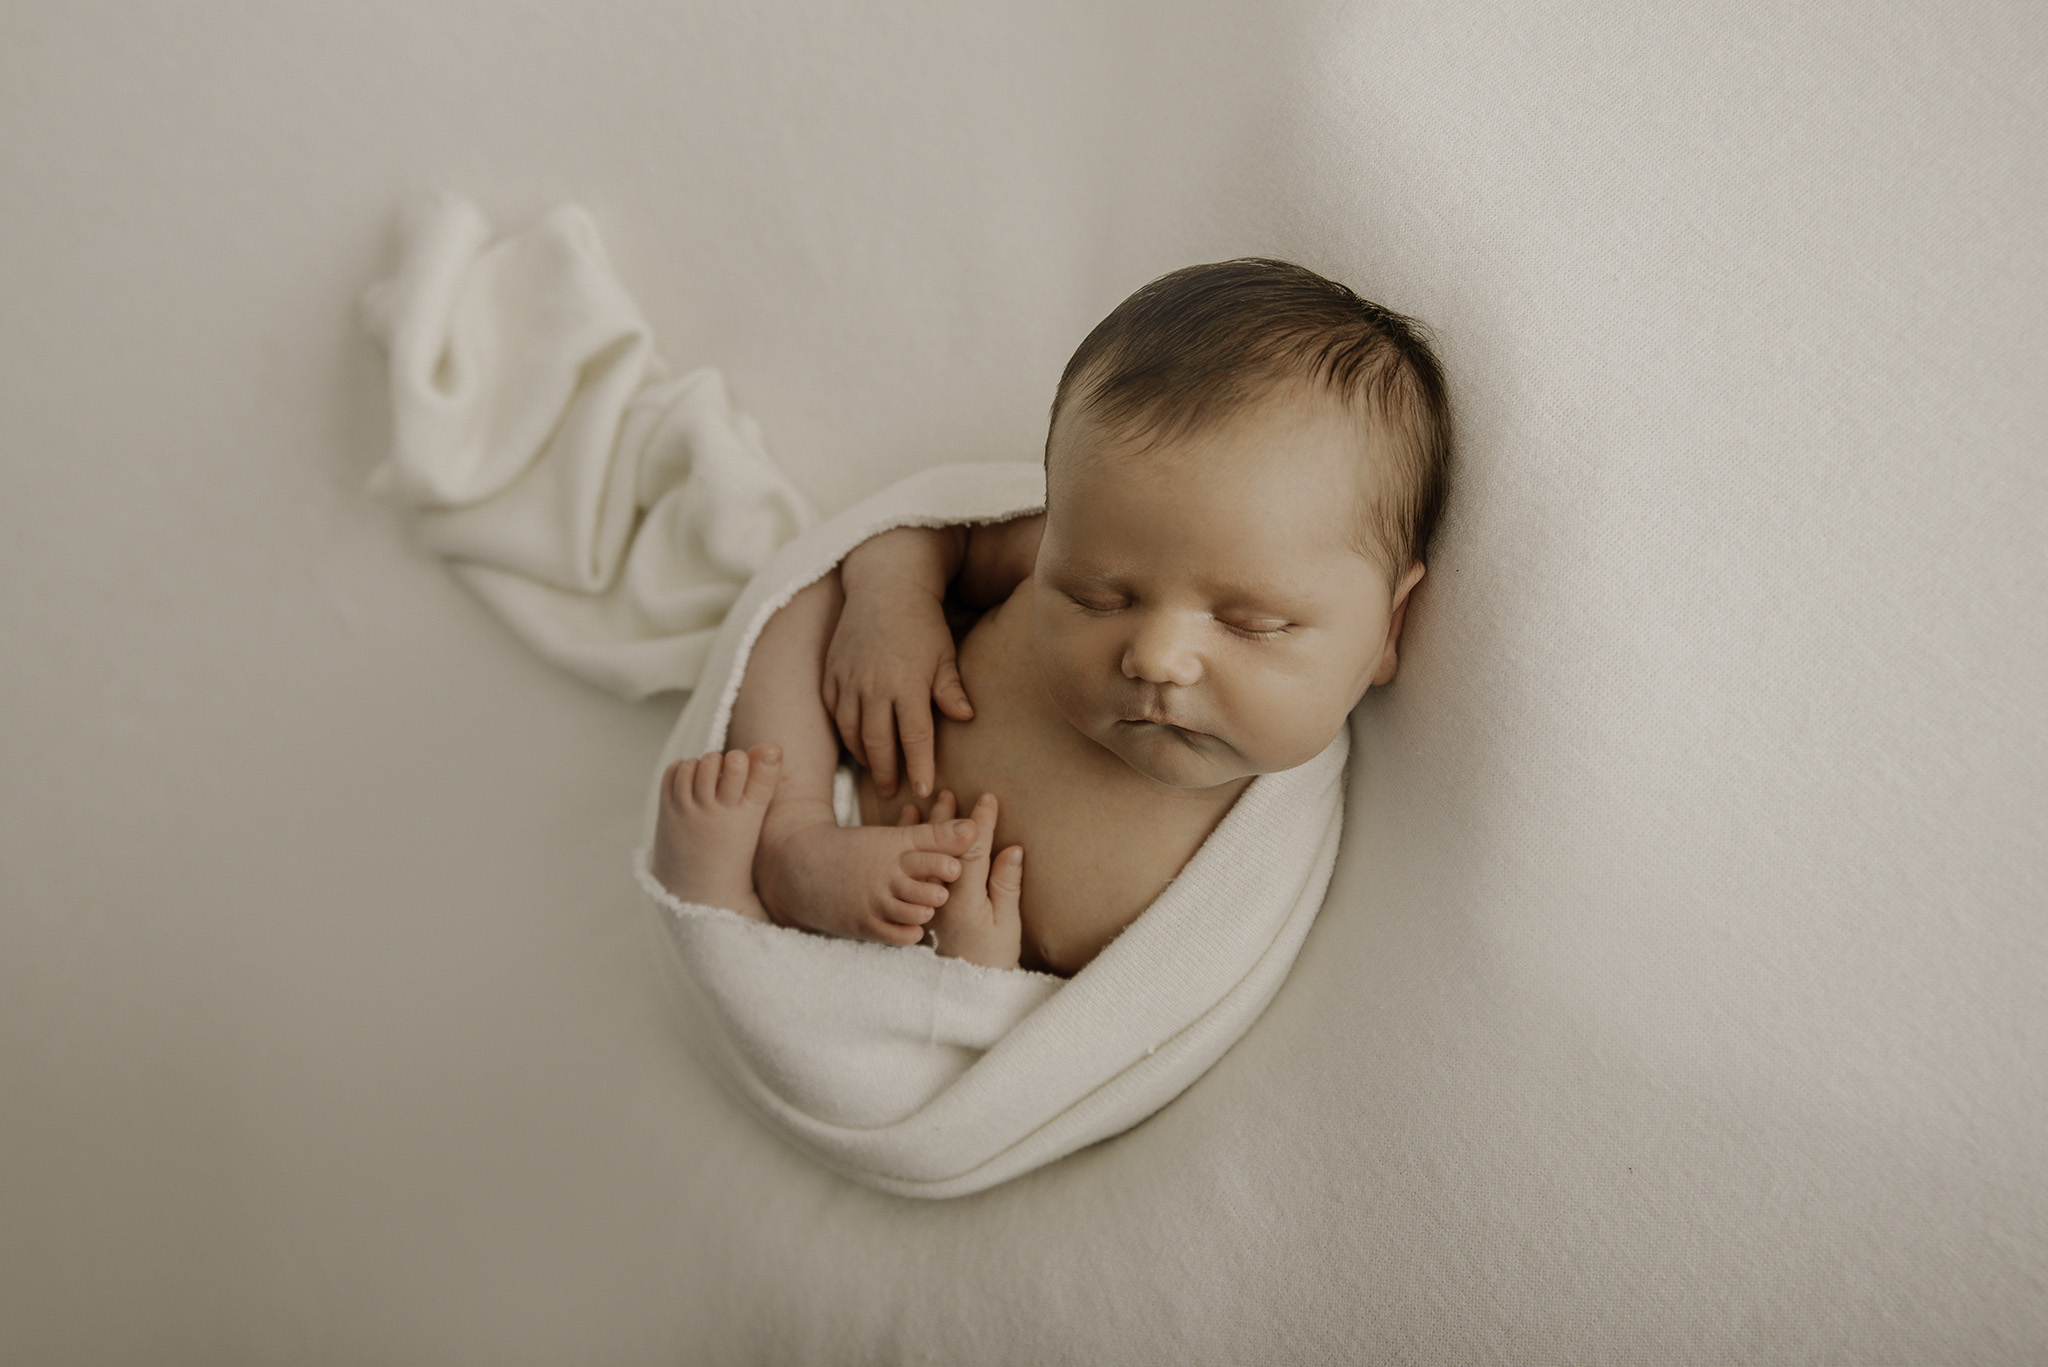 séance naissance à lille - formation photographe nouveau-né - workshop - newborn - One Moment Photographie - 447 copie